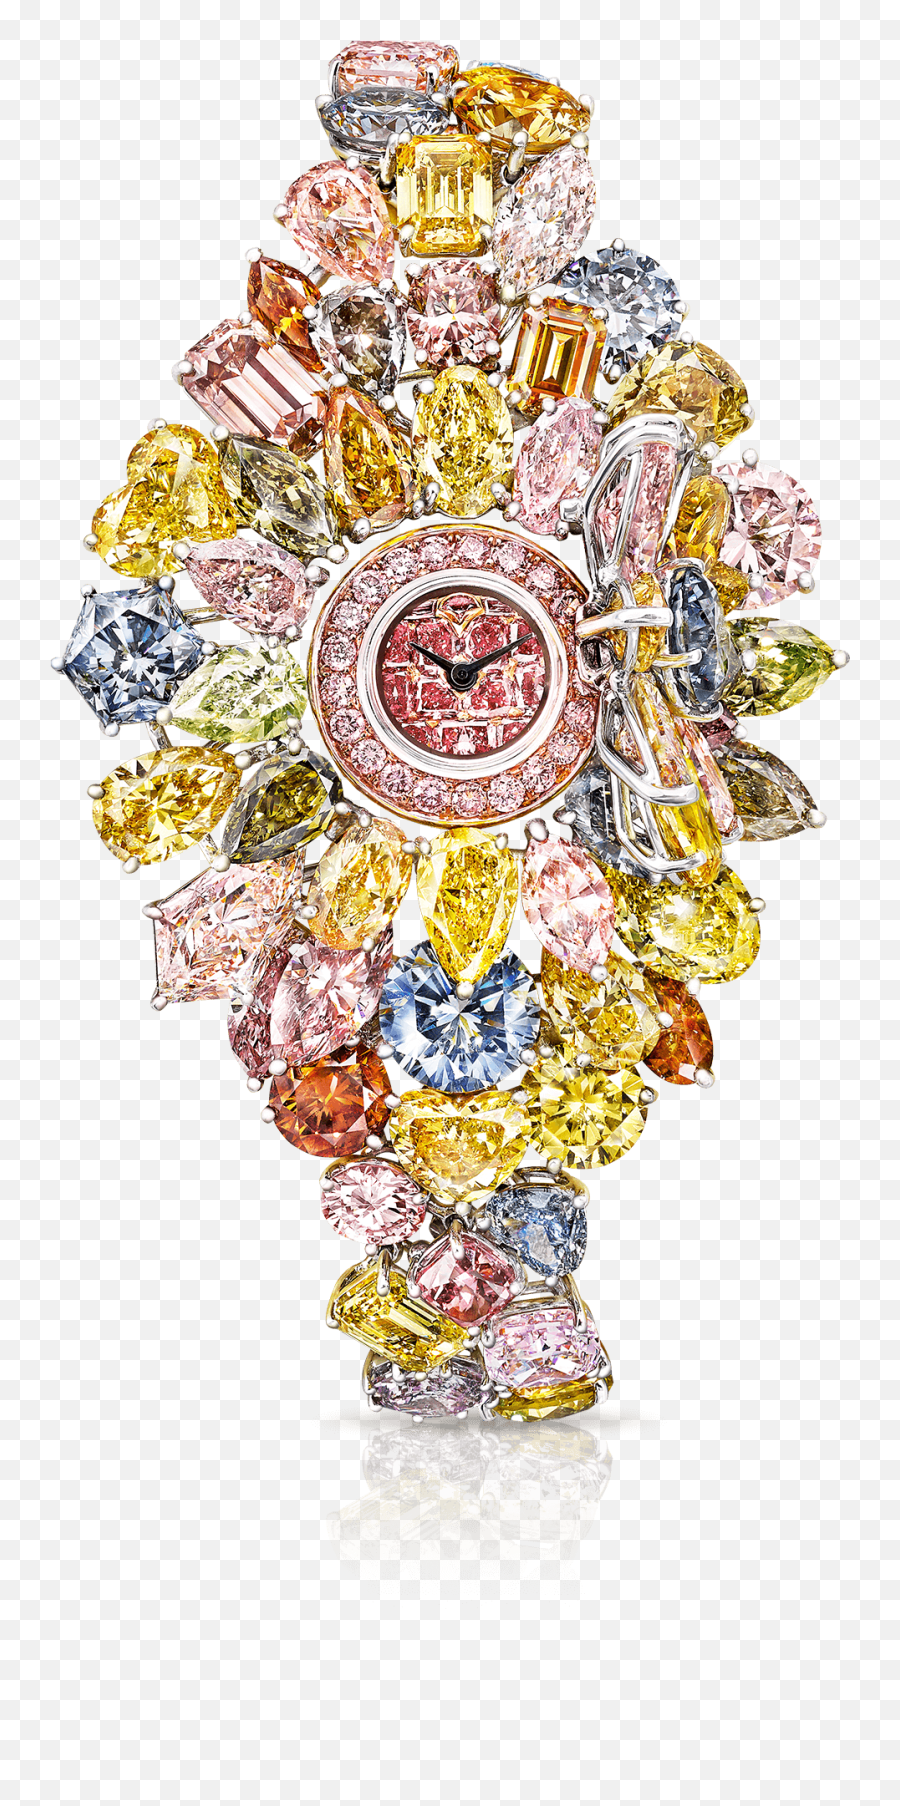 Unique Timepieces - Coloured Diamond Watch Png,Diamonds Transparent Background